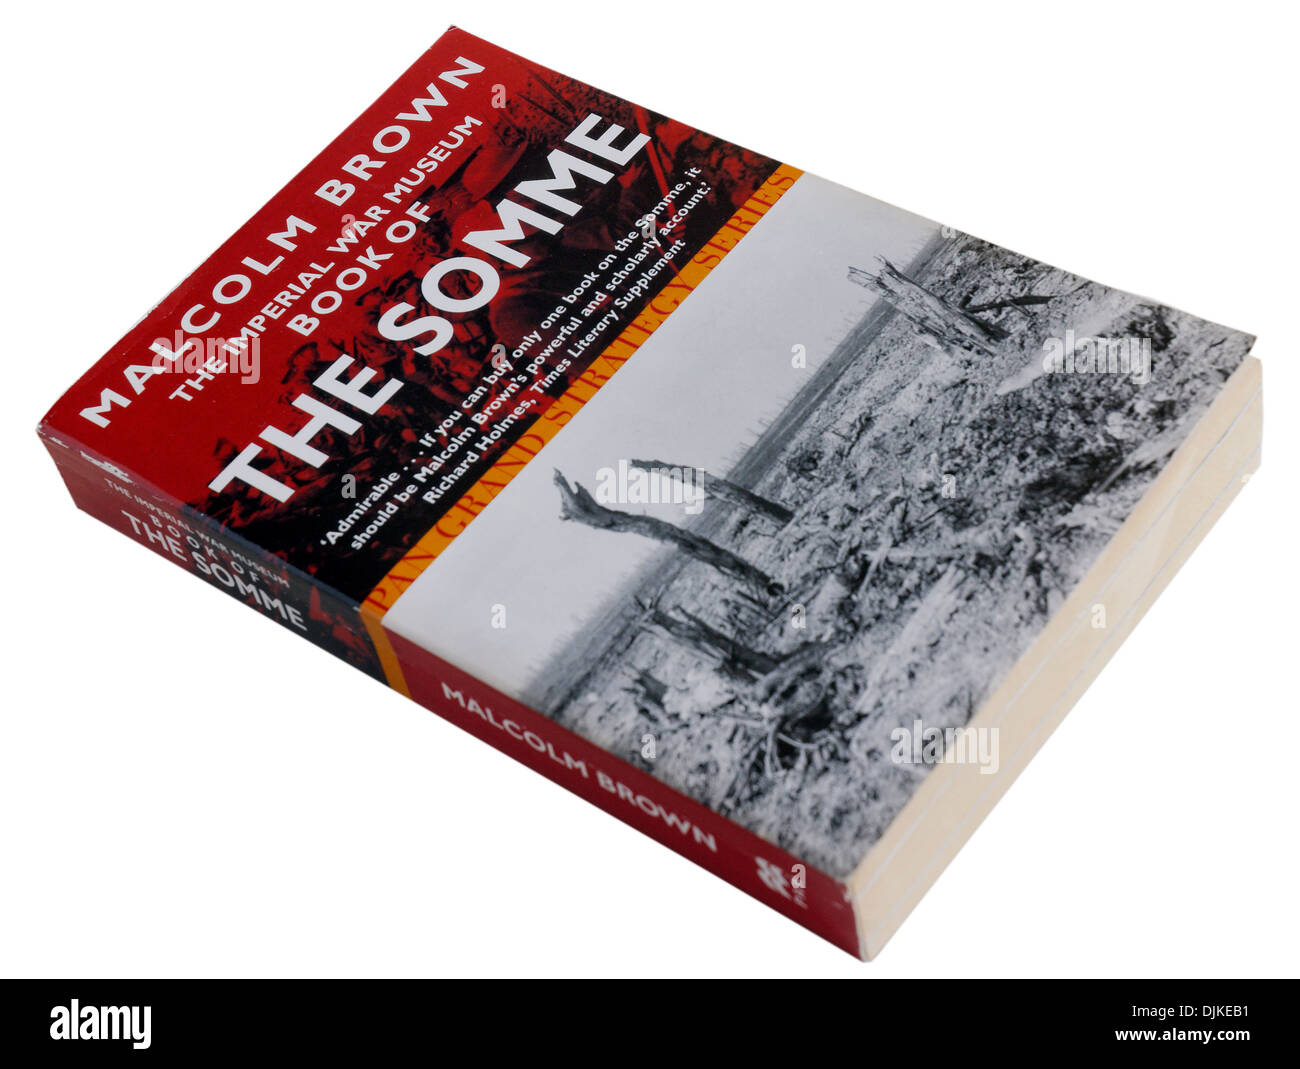 Die Schlacht des Somme-Buches von Malcolm Brown Stockfoto